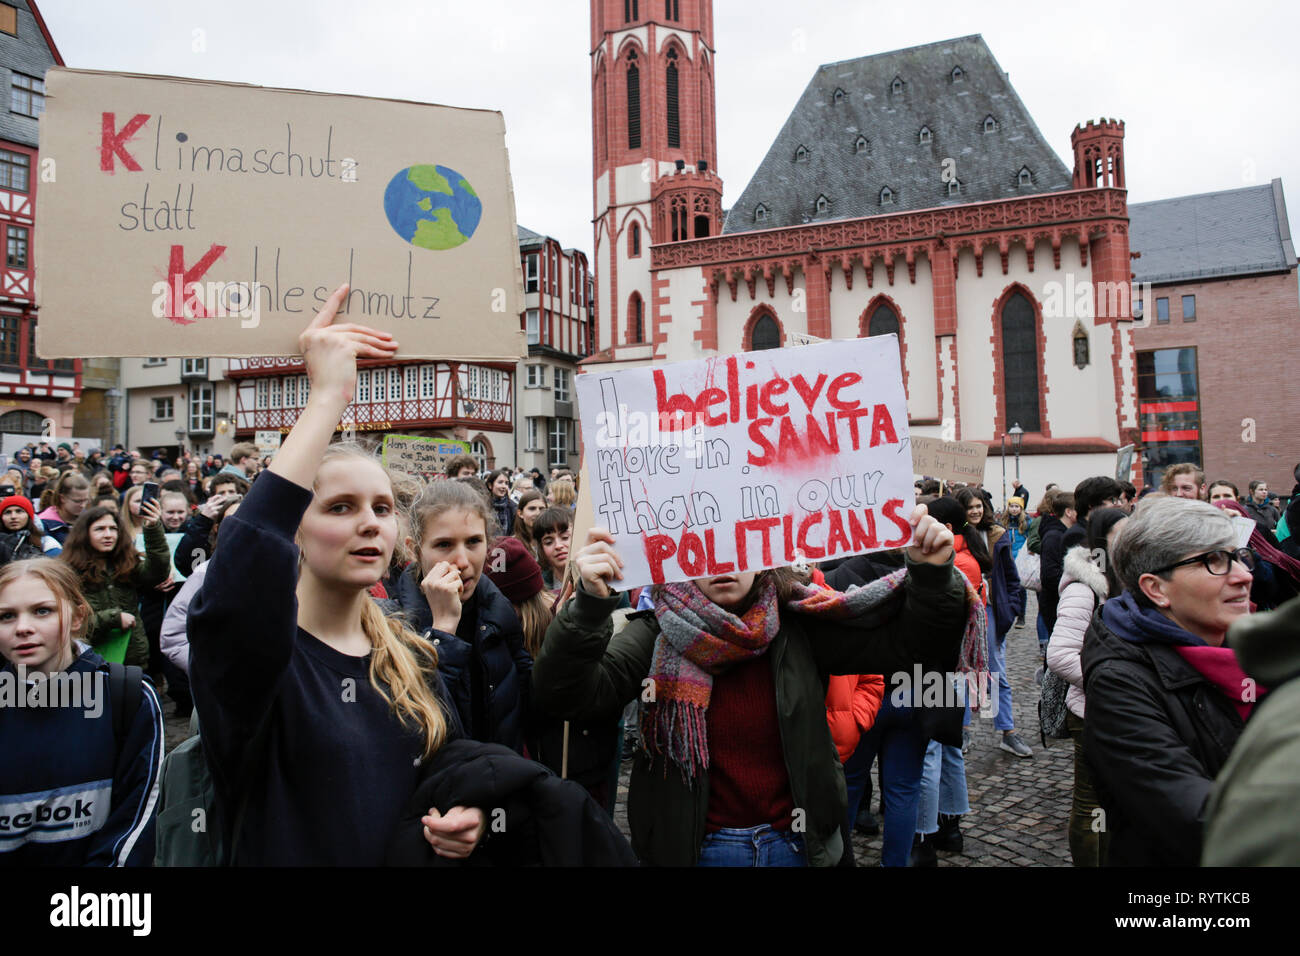 Francoforte, Germania. Il 15 marzo 2019. I manifestanti sono ritratte in occasione della finale del rally a Roemerberg int quadrato al centro di Francoforte. Oltre 6 mila persone (per la maggior parte degli alunni che hanno saltato la scuola per prendere parte alla protesta) hanno marciato attraverso Francoforte, per protestare contro il cambiamento climatico e per l' introduzione di misure contro di essa. La protesta è stata parte del clima in tutto il mondo il giorno di sciopero dal movimento FridaysForFuture, iniziato da Greta Thunberg in Svezia. Credito: Michael Debets/Alamy Live News Foto Stock